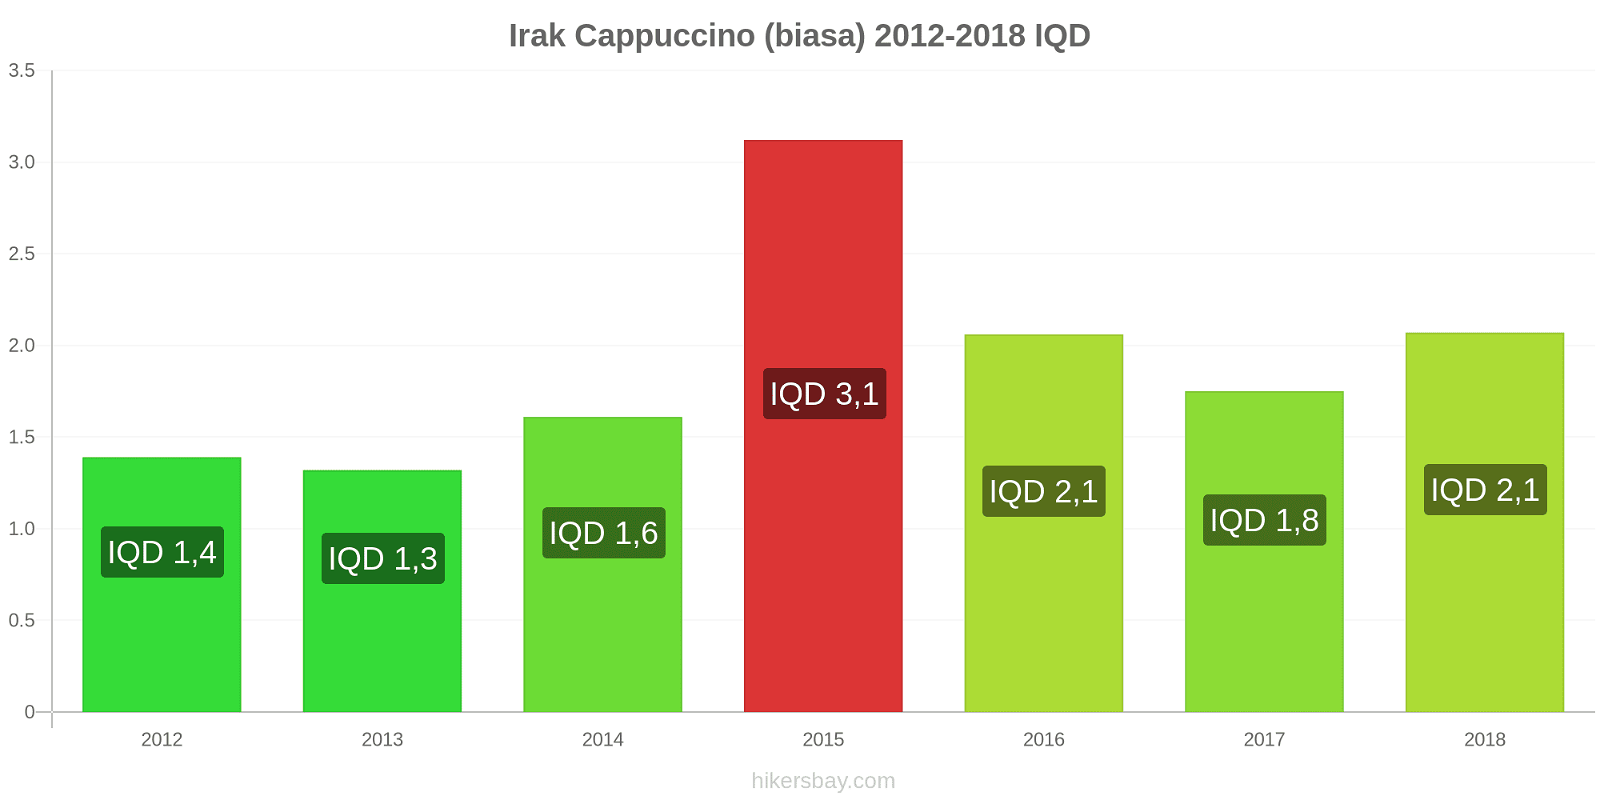 Irak perubahan harga Cappuccino hikersbay.com